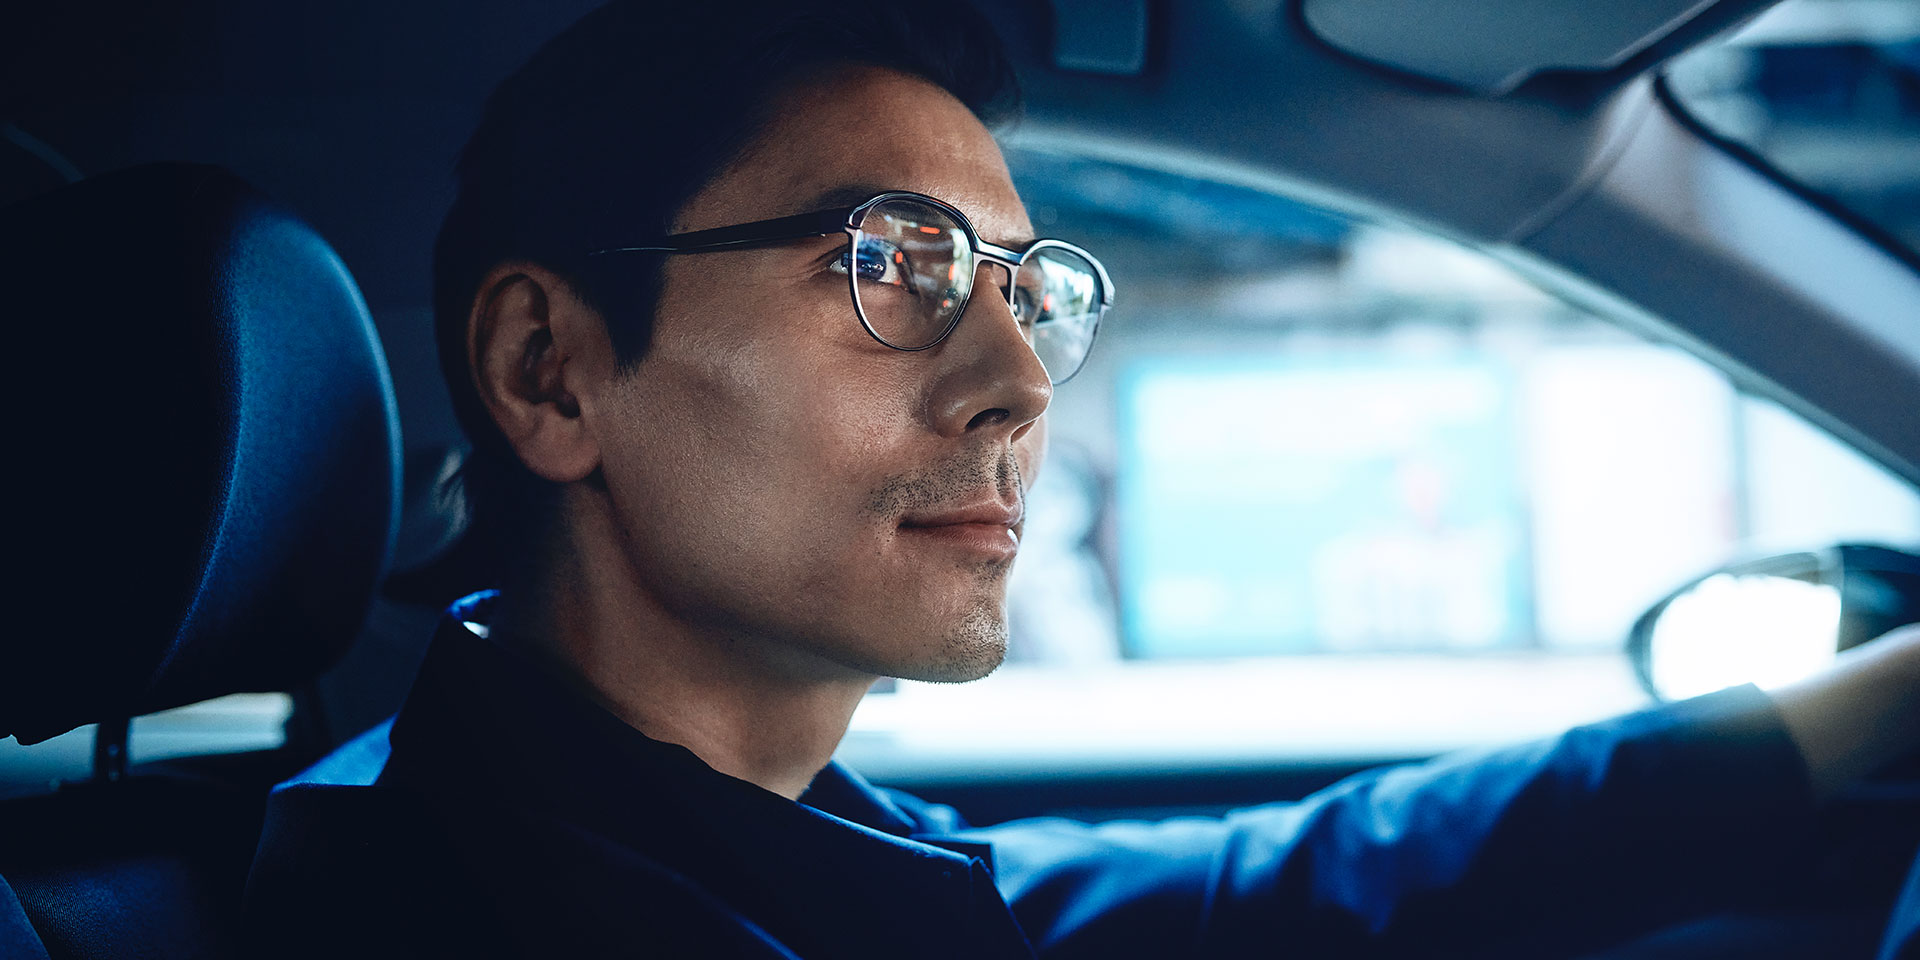 Een man die een auto bestuurt, ziet er zelfverzekerd uit met een kleine glimlach. Hij draagt ZEISS enkelvoudige DriveSafe brillenglazen